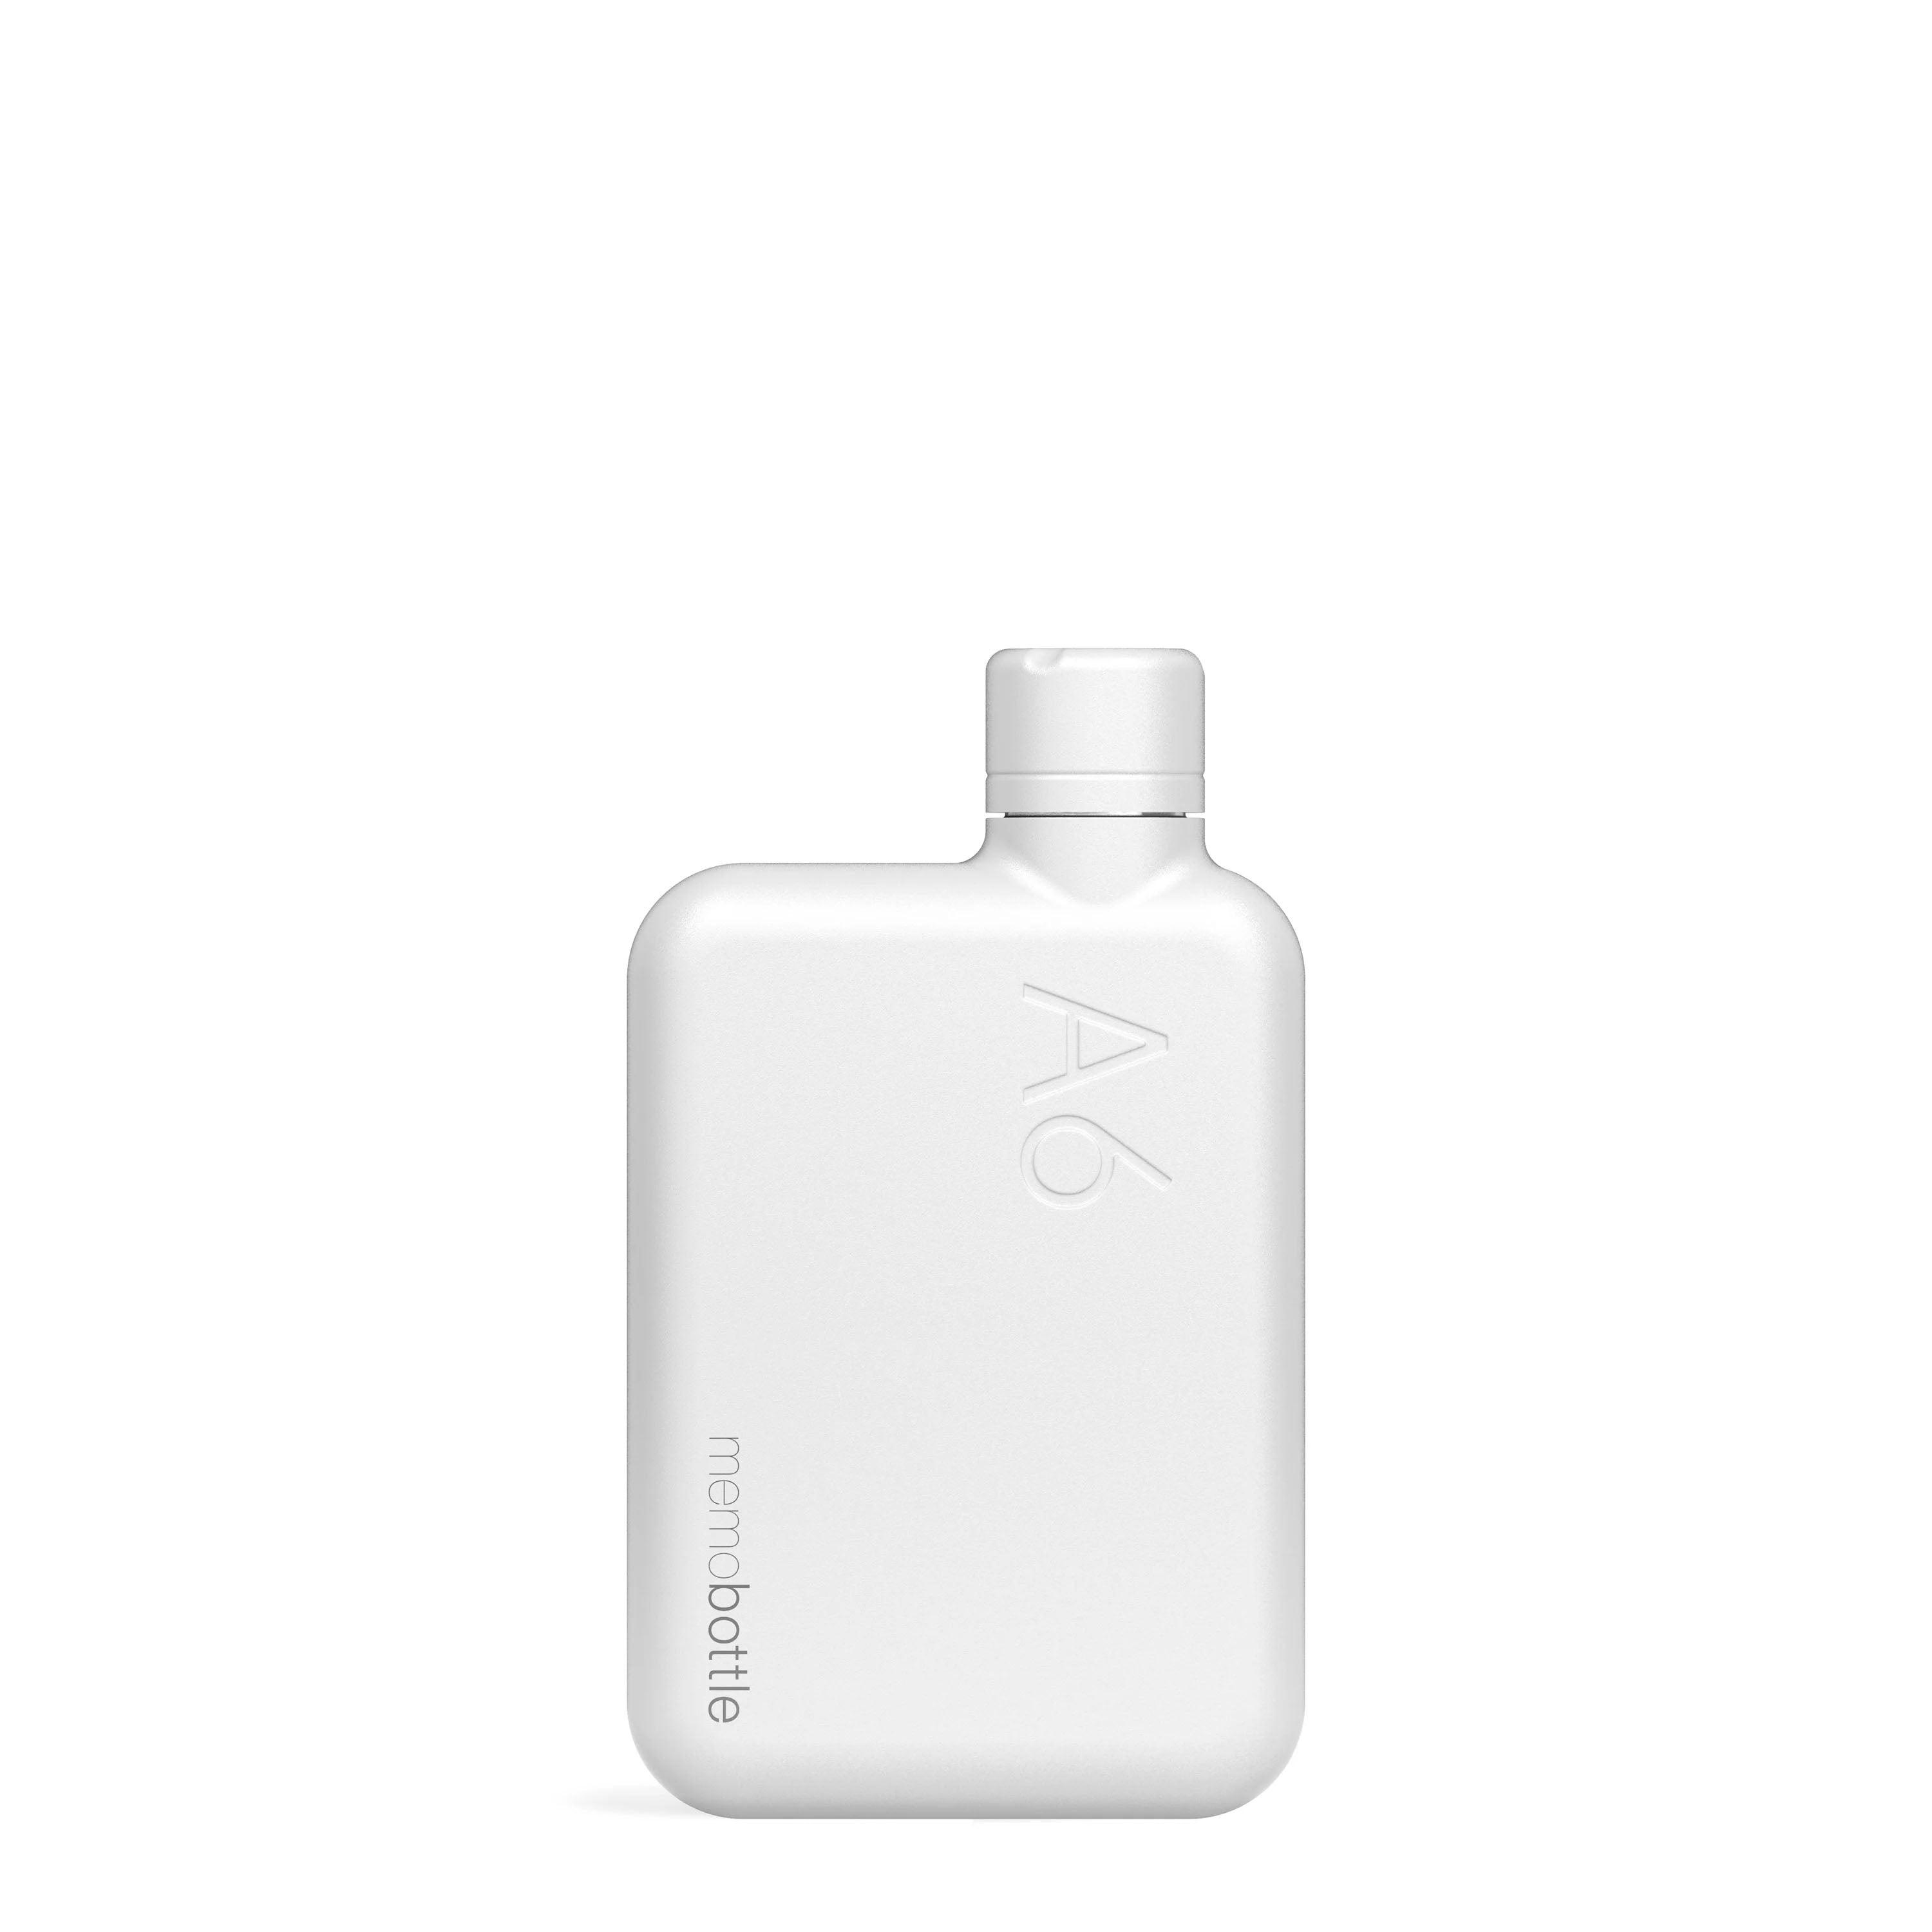 380ml A6 Flat Water Bottle Flask Portable Sleek Sturdy Bottle No-leak Light  Weight Handbag/Purse/Pocket Square Bottle